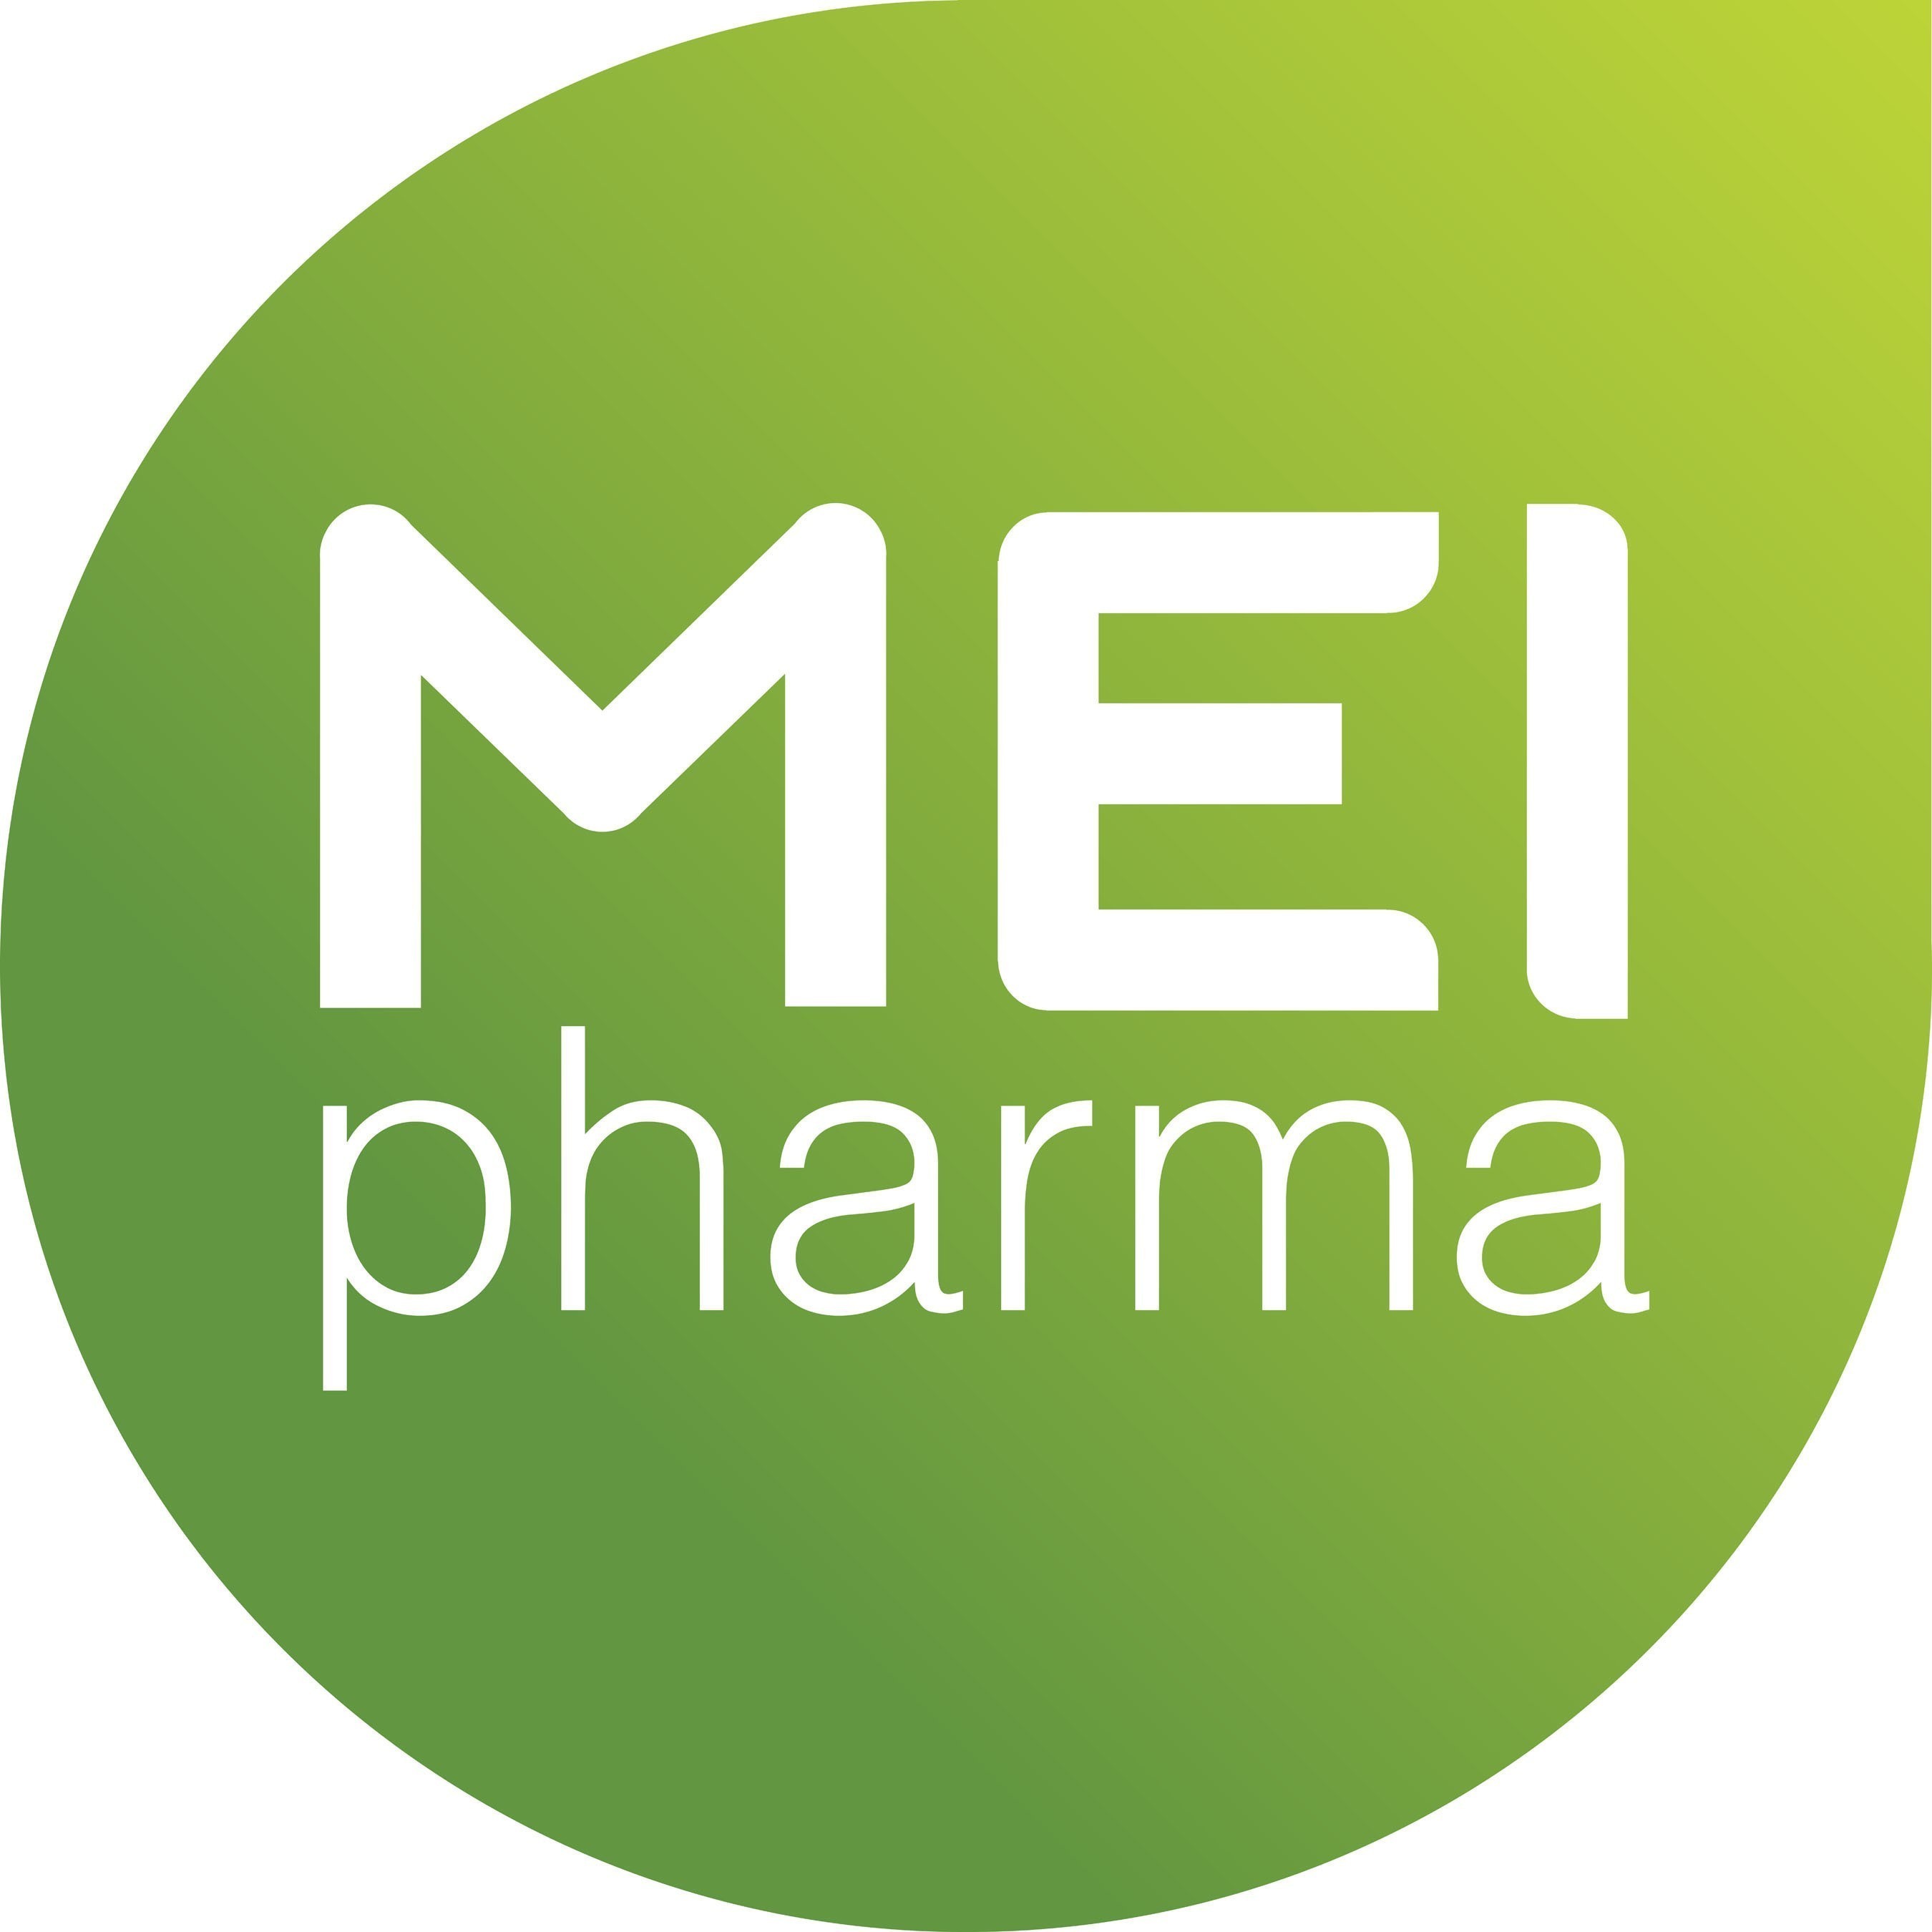 MEI Pharma Logo.